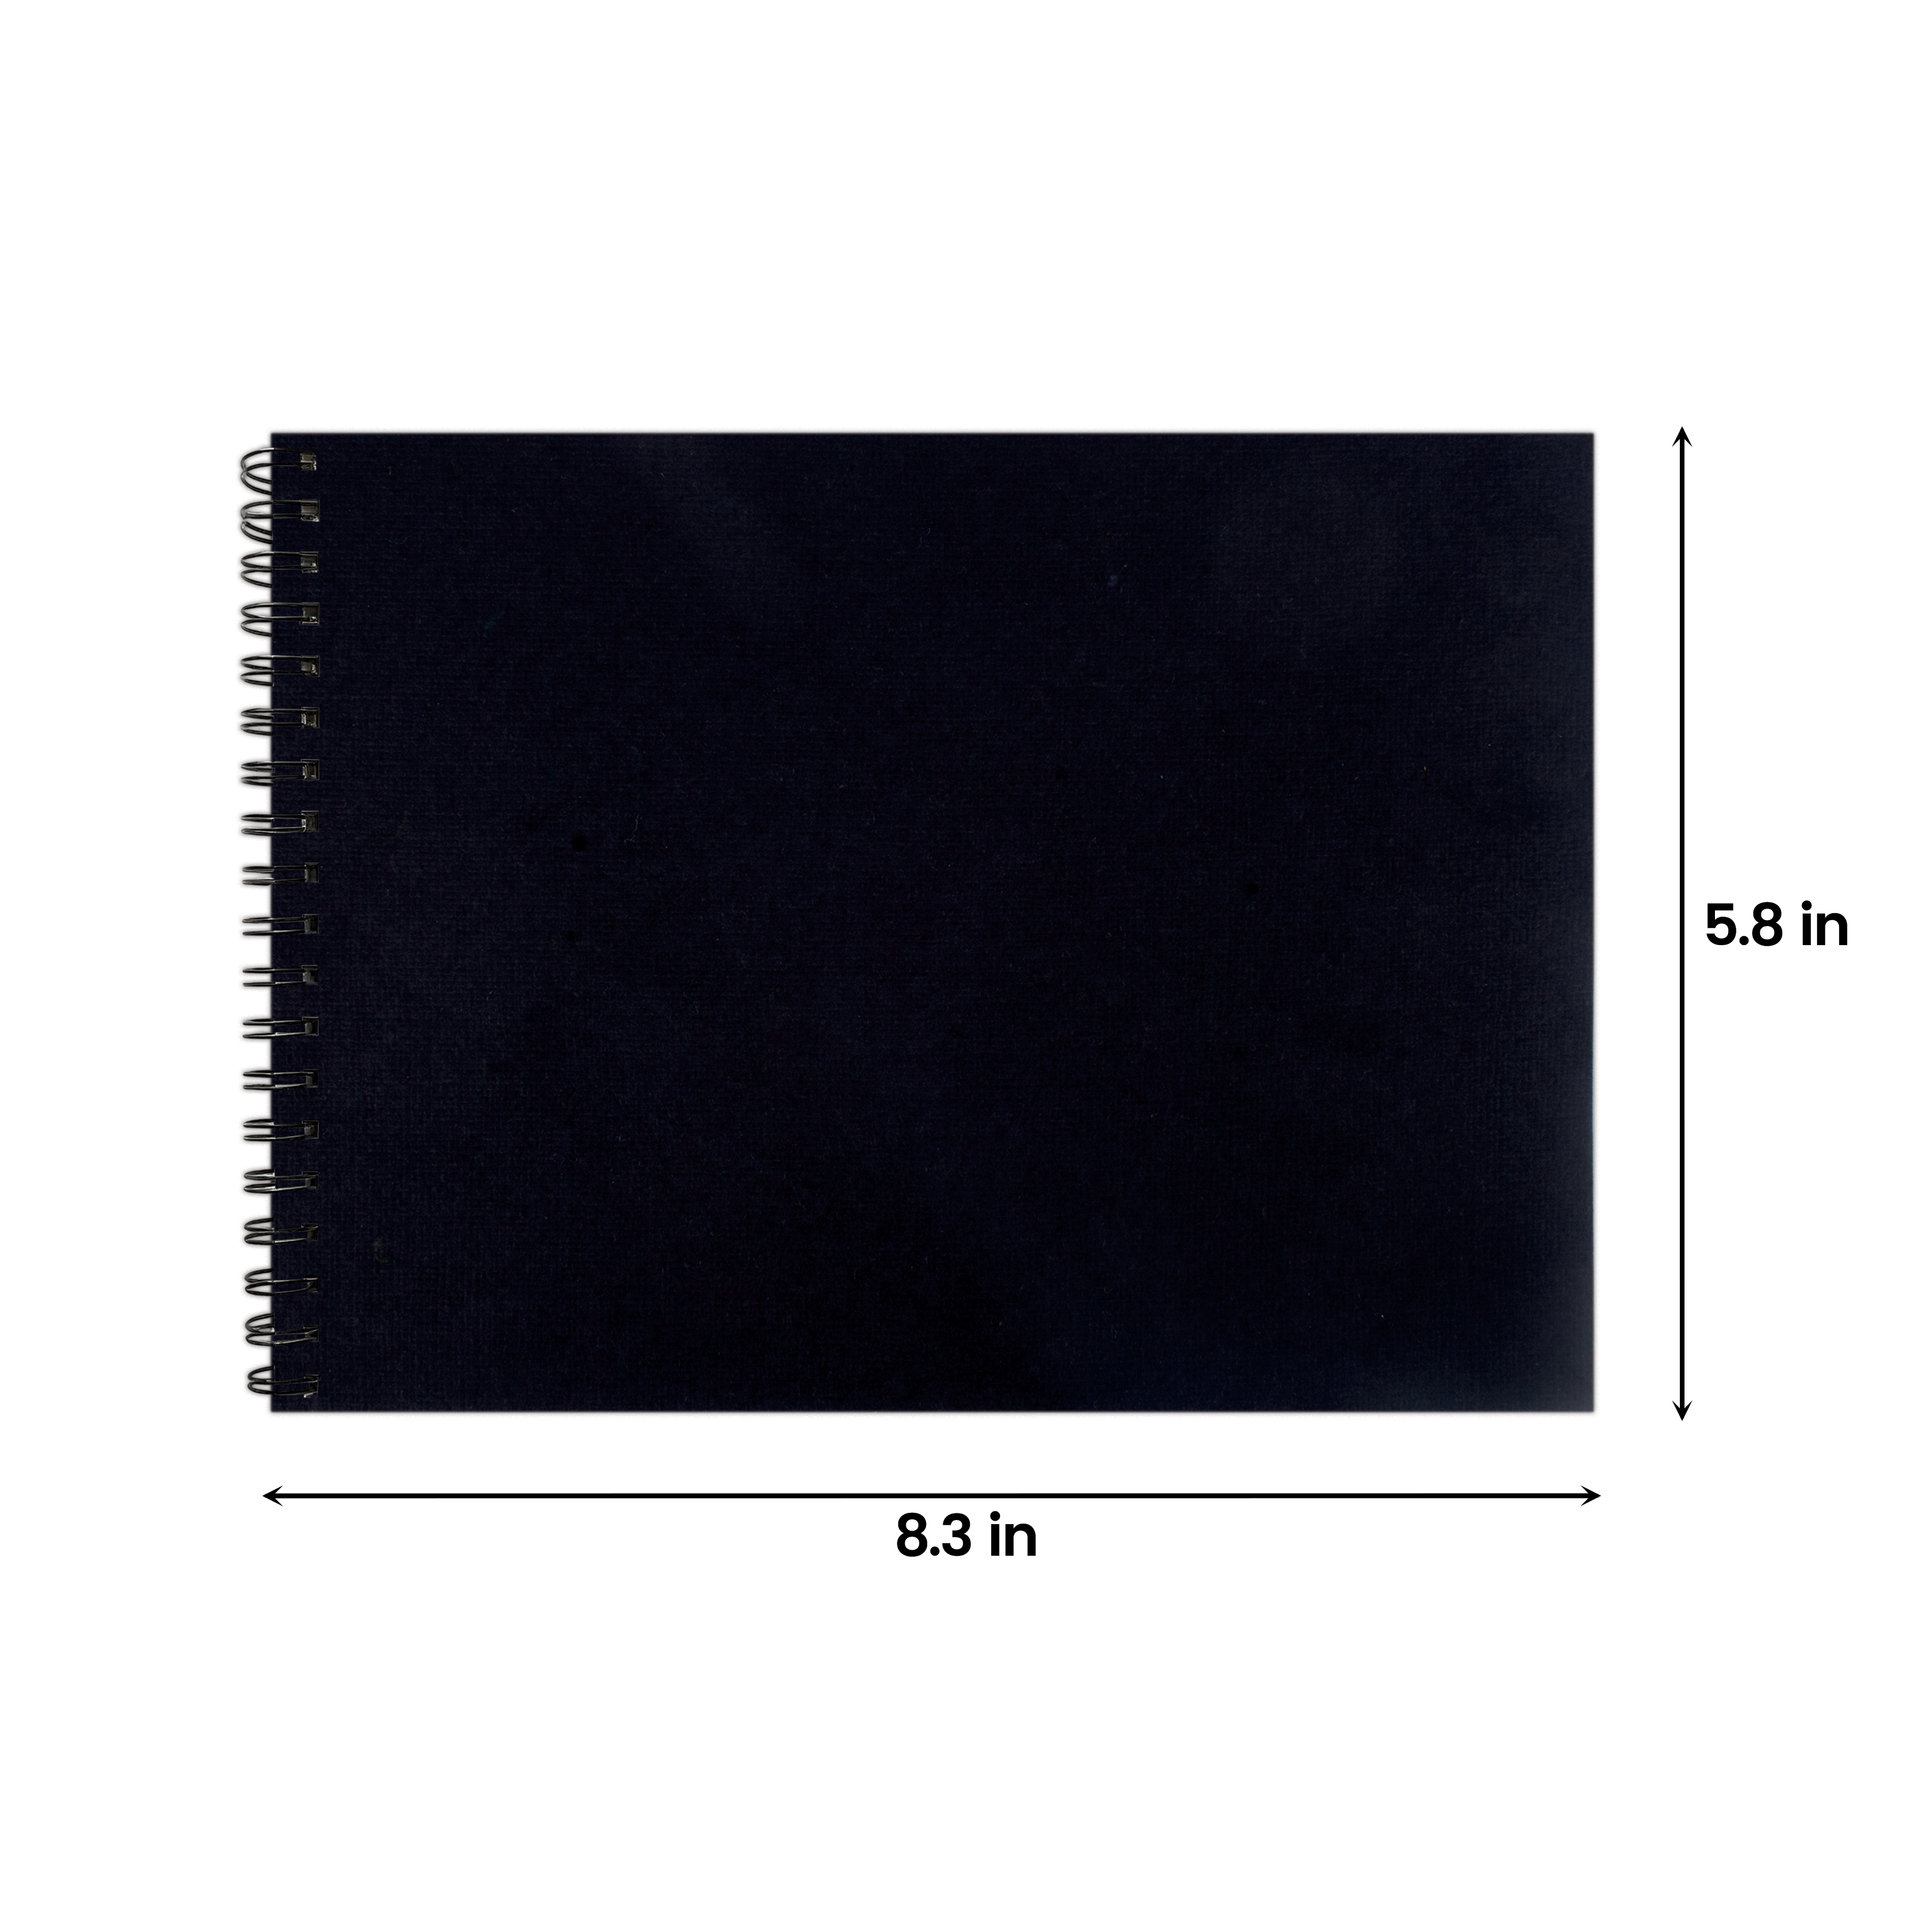 Black Handmade Paper Sketchbook Spiral Bound A5 200gsm 24Sheets 1 Book